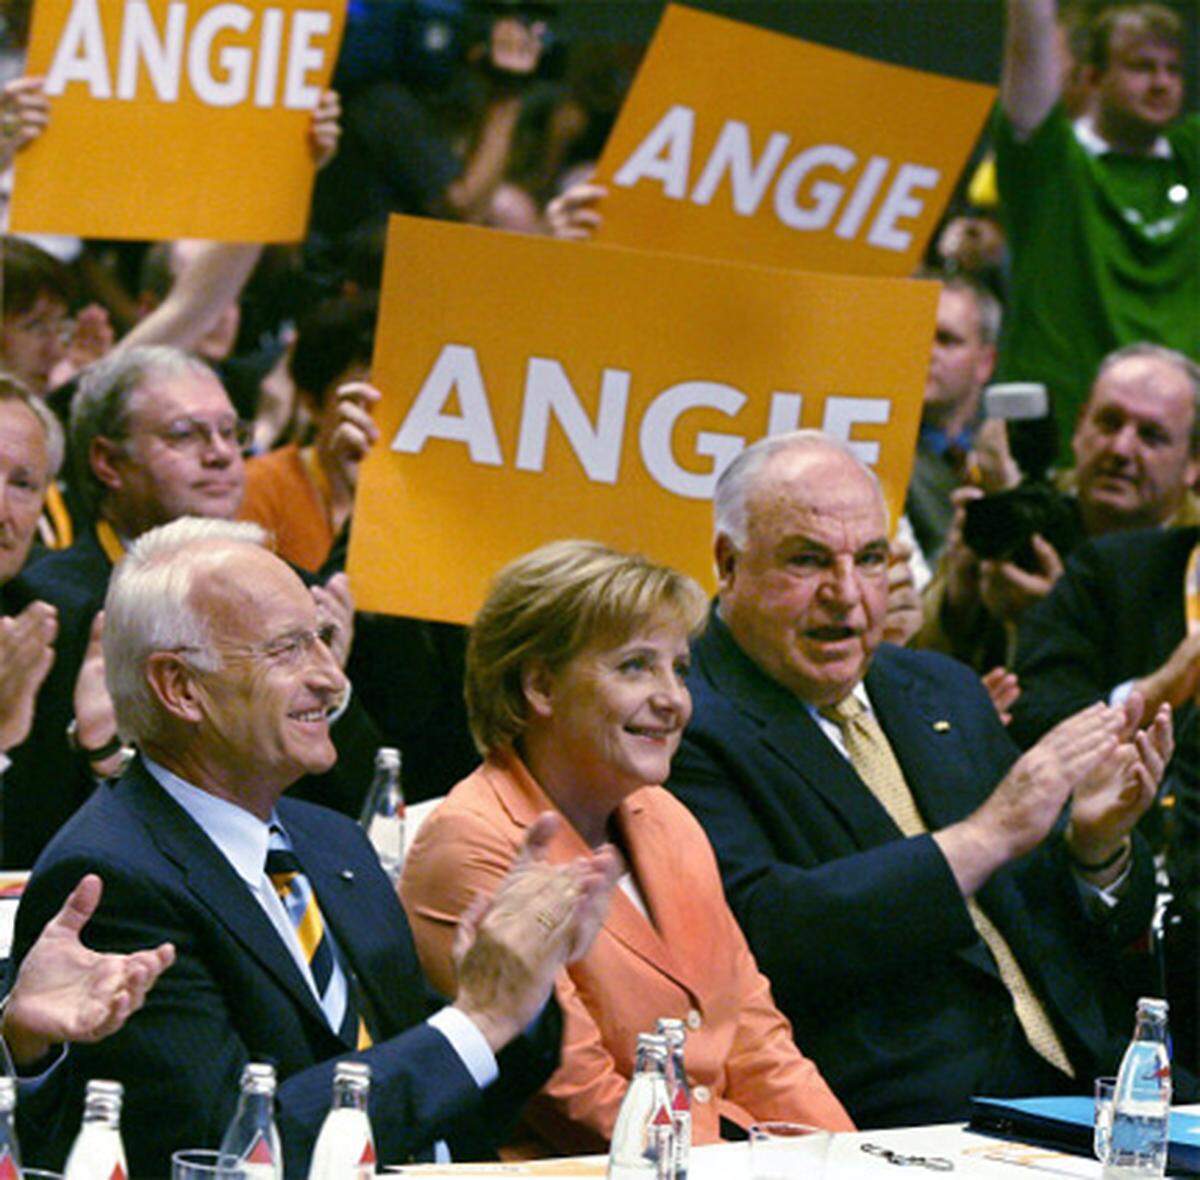 Am 30. Mai 2005 kürten CDU und CSU die evangelische Pastorentochter aus Ostdeutschland schließlich zur gemeinsamen Kanzlerkandidatin für die auf den 18. September vorgezogene Bundestagswahl. Mit dem bekannten Ergebnis: Merkel regierte vier Jahre in einer Großen Koalition.